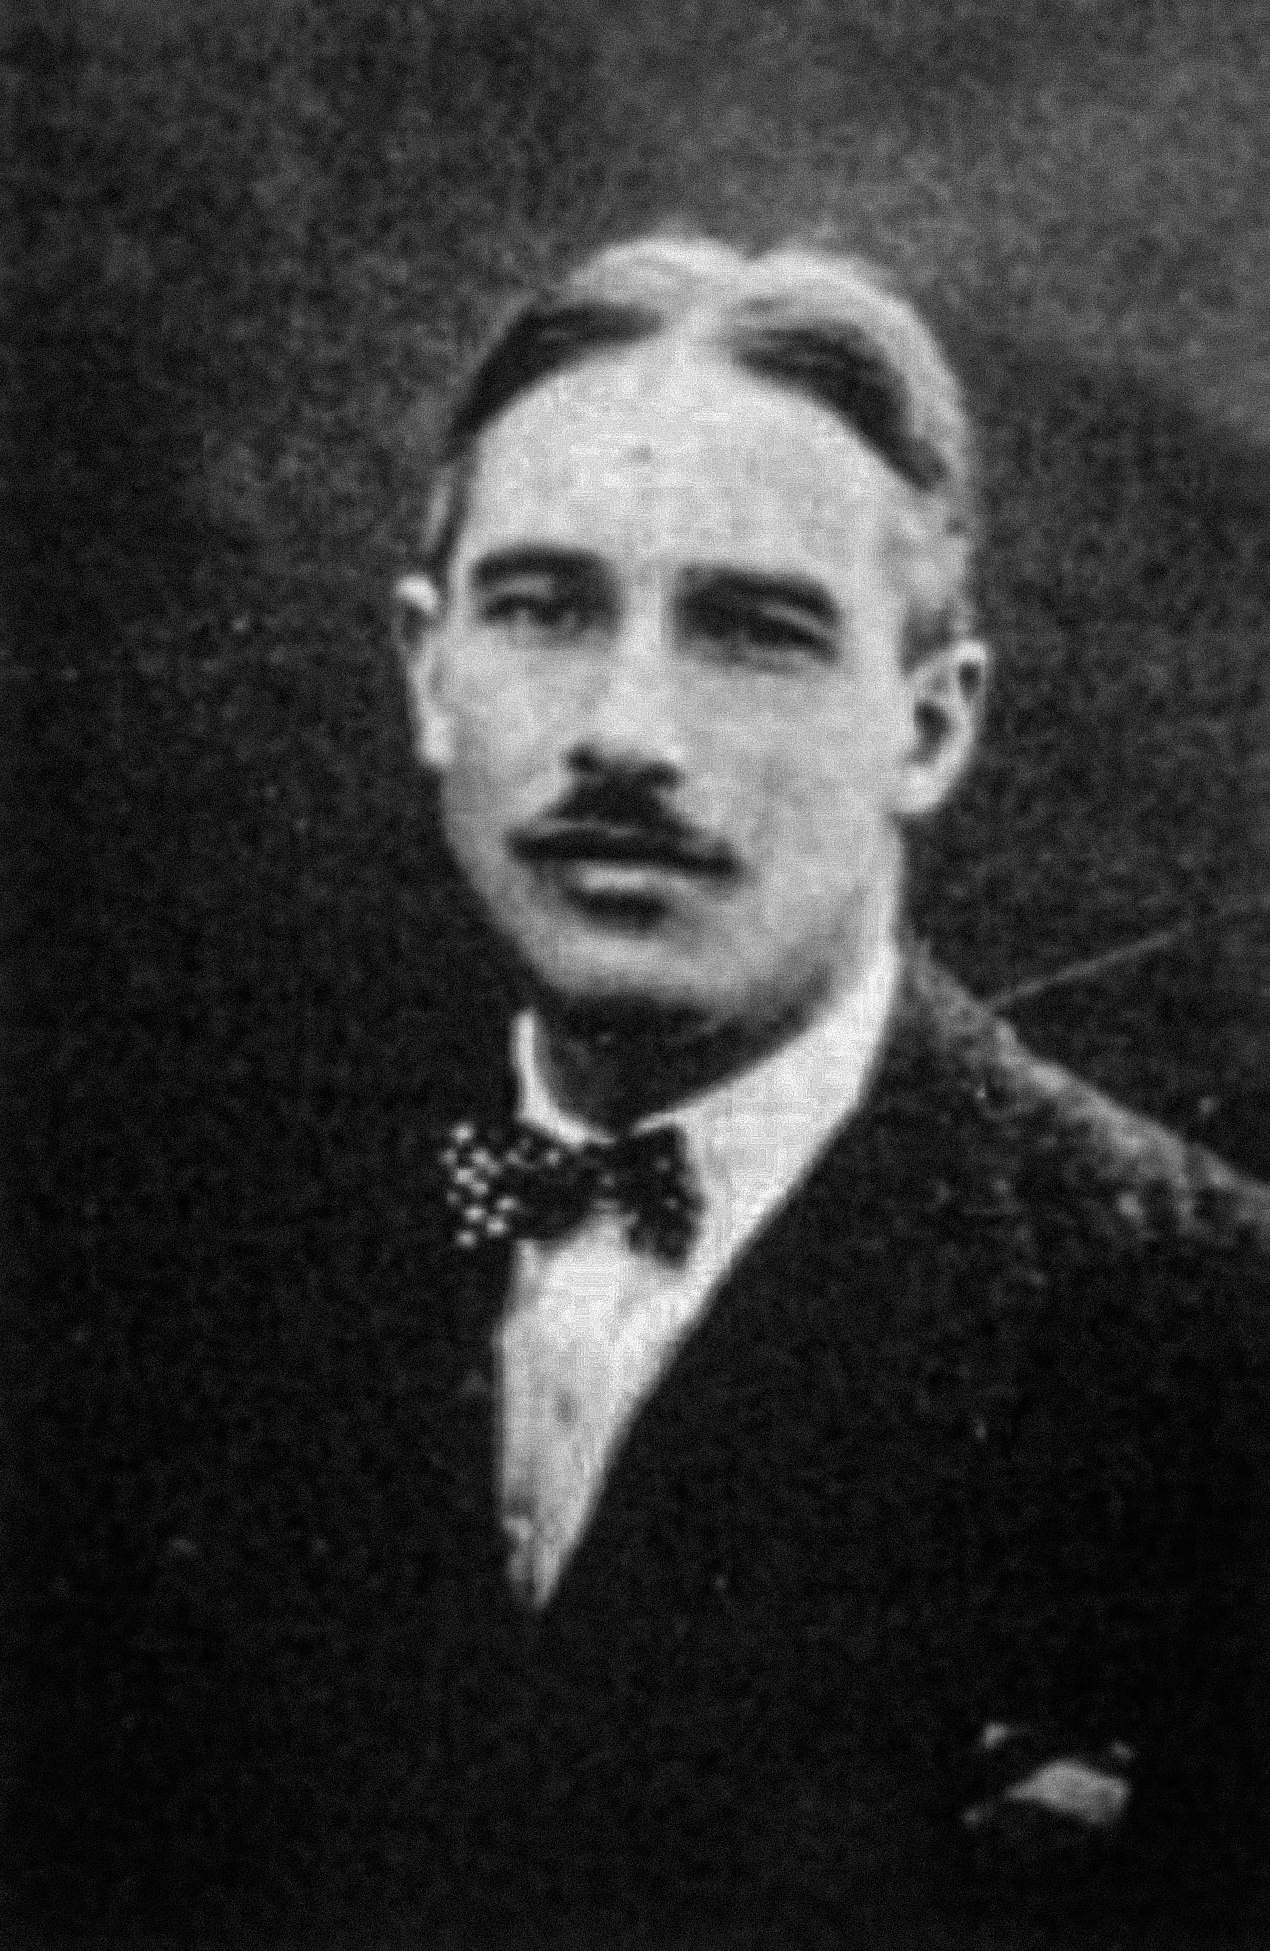 ഫ്രാങ്കോയിസ് ഡി ലോയ്സ് (1892-1935) ഒരുപക്ഷേ വെനസ്വേല പര്യവേഷണത്തിന് 1917-ന് മുമ്പ്